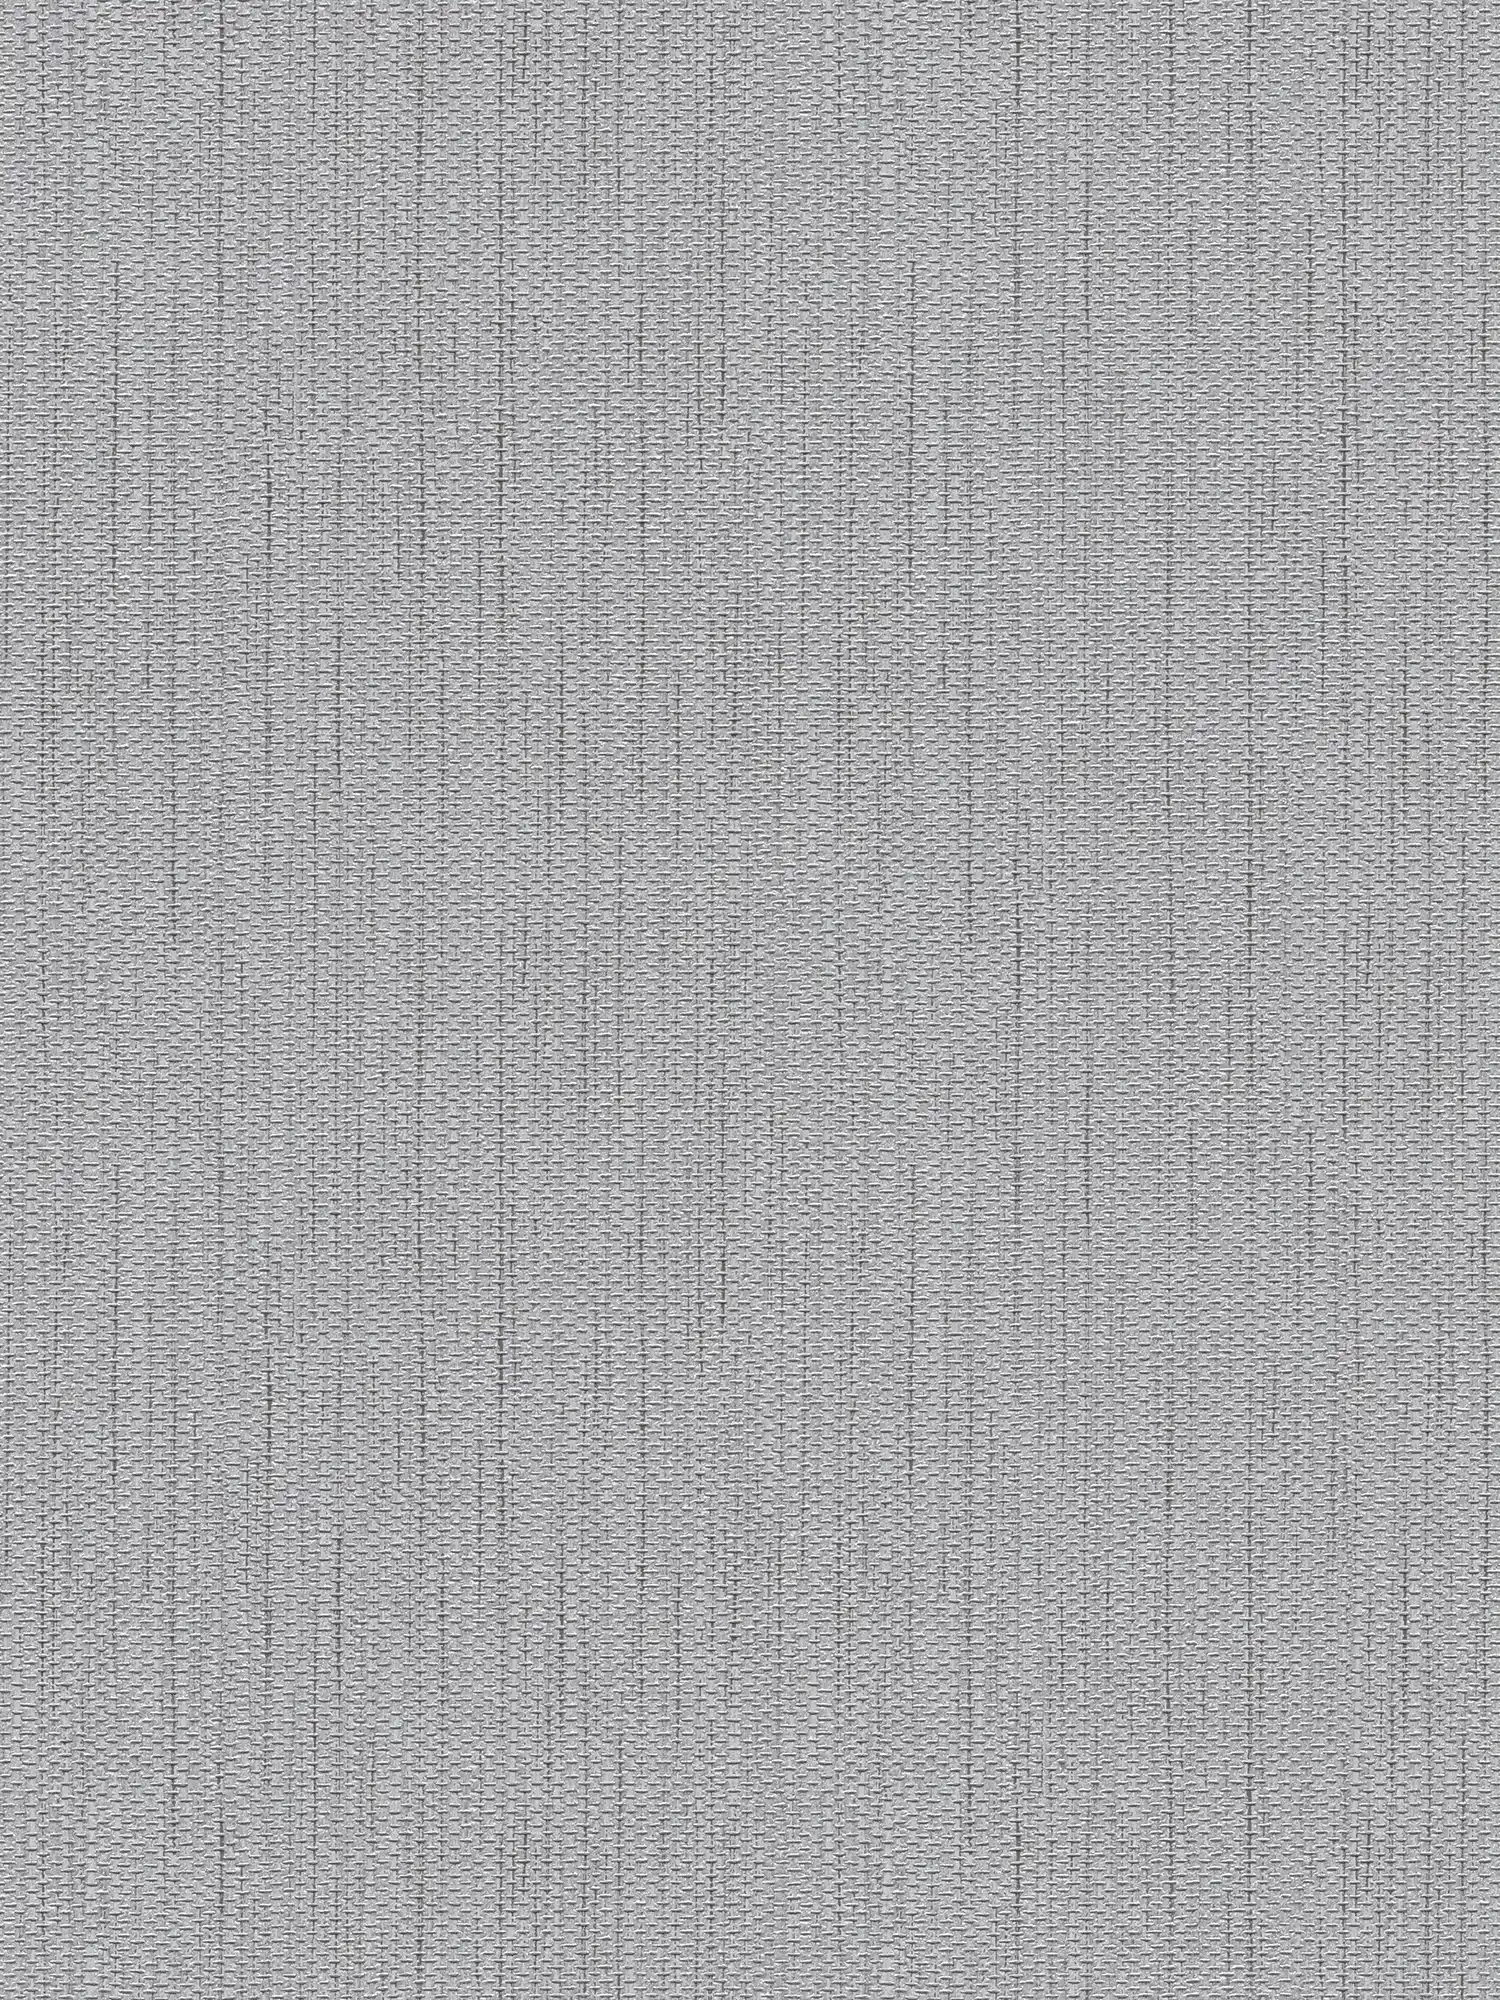 Vliesbehang textiellook met linnenstructuur - grijs
